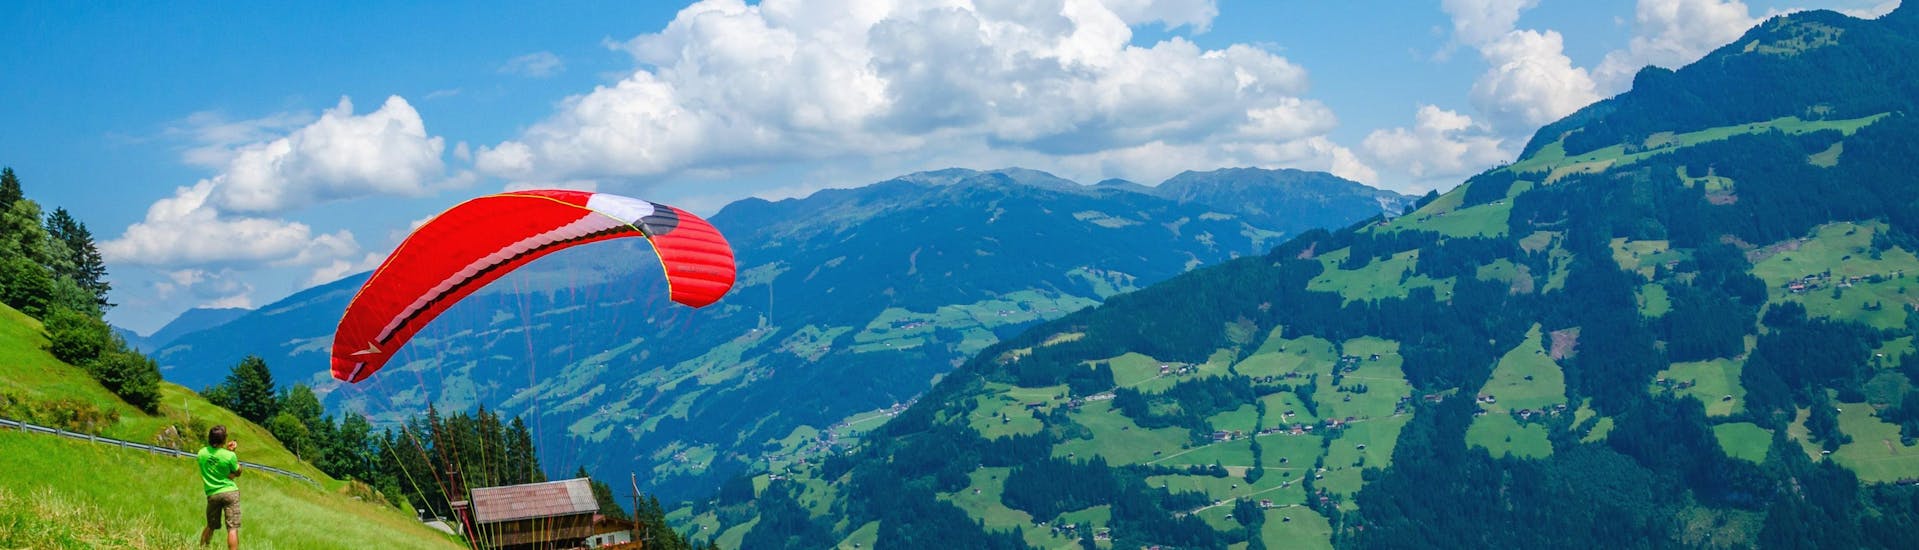 Prachtig uitzicht op de bergen van het Zillertal, een populaire regio voor paragliding.